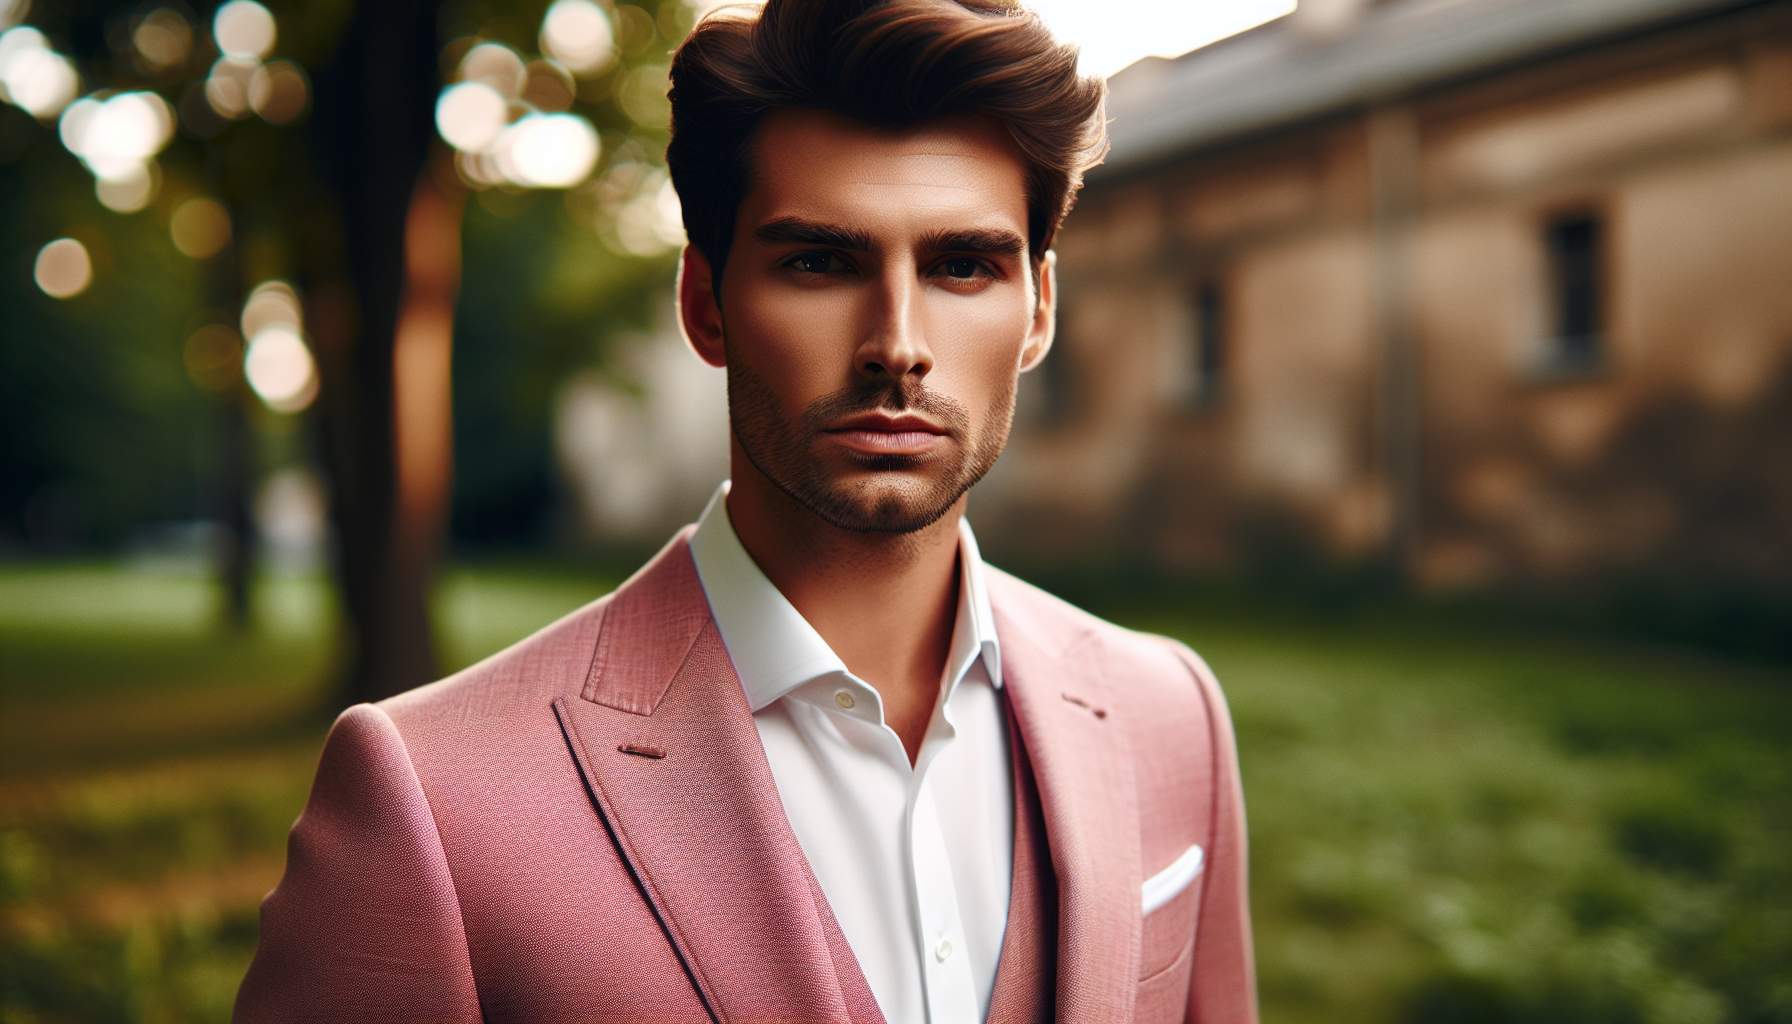 La tendance incontournable: veste costume rose homme - Comment adopter ce style avec élégance et assurance